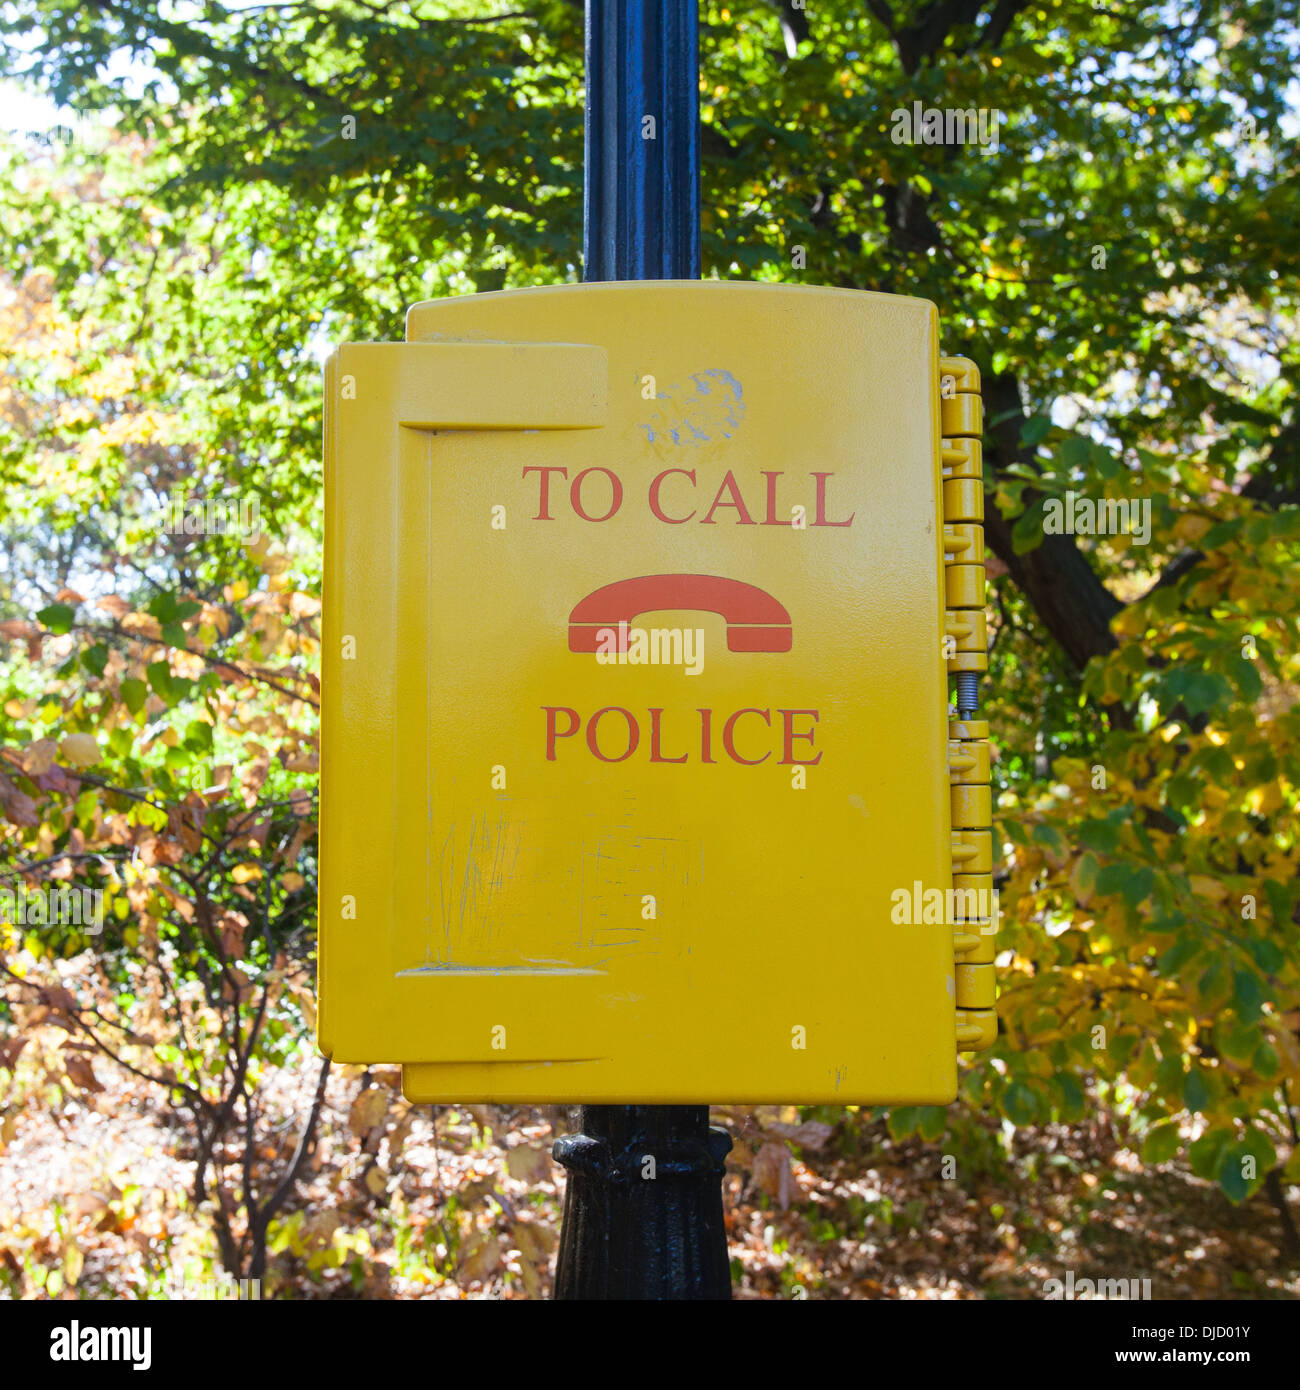 Polizei Call Box, Central Park, New York City, Vereinigte Staaten von Amerika. Stockfoto